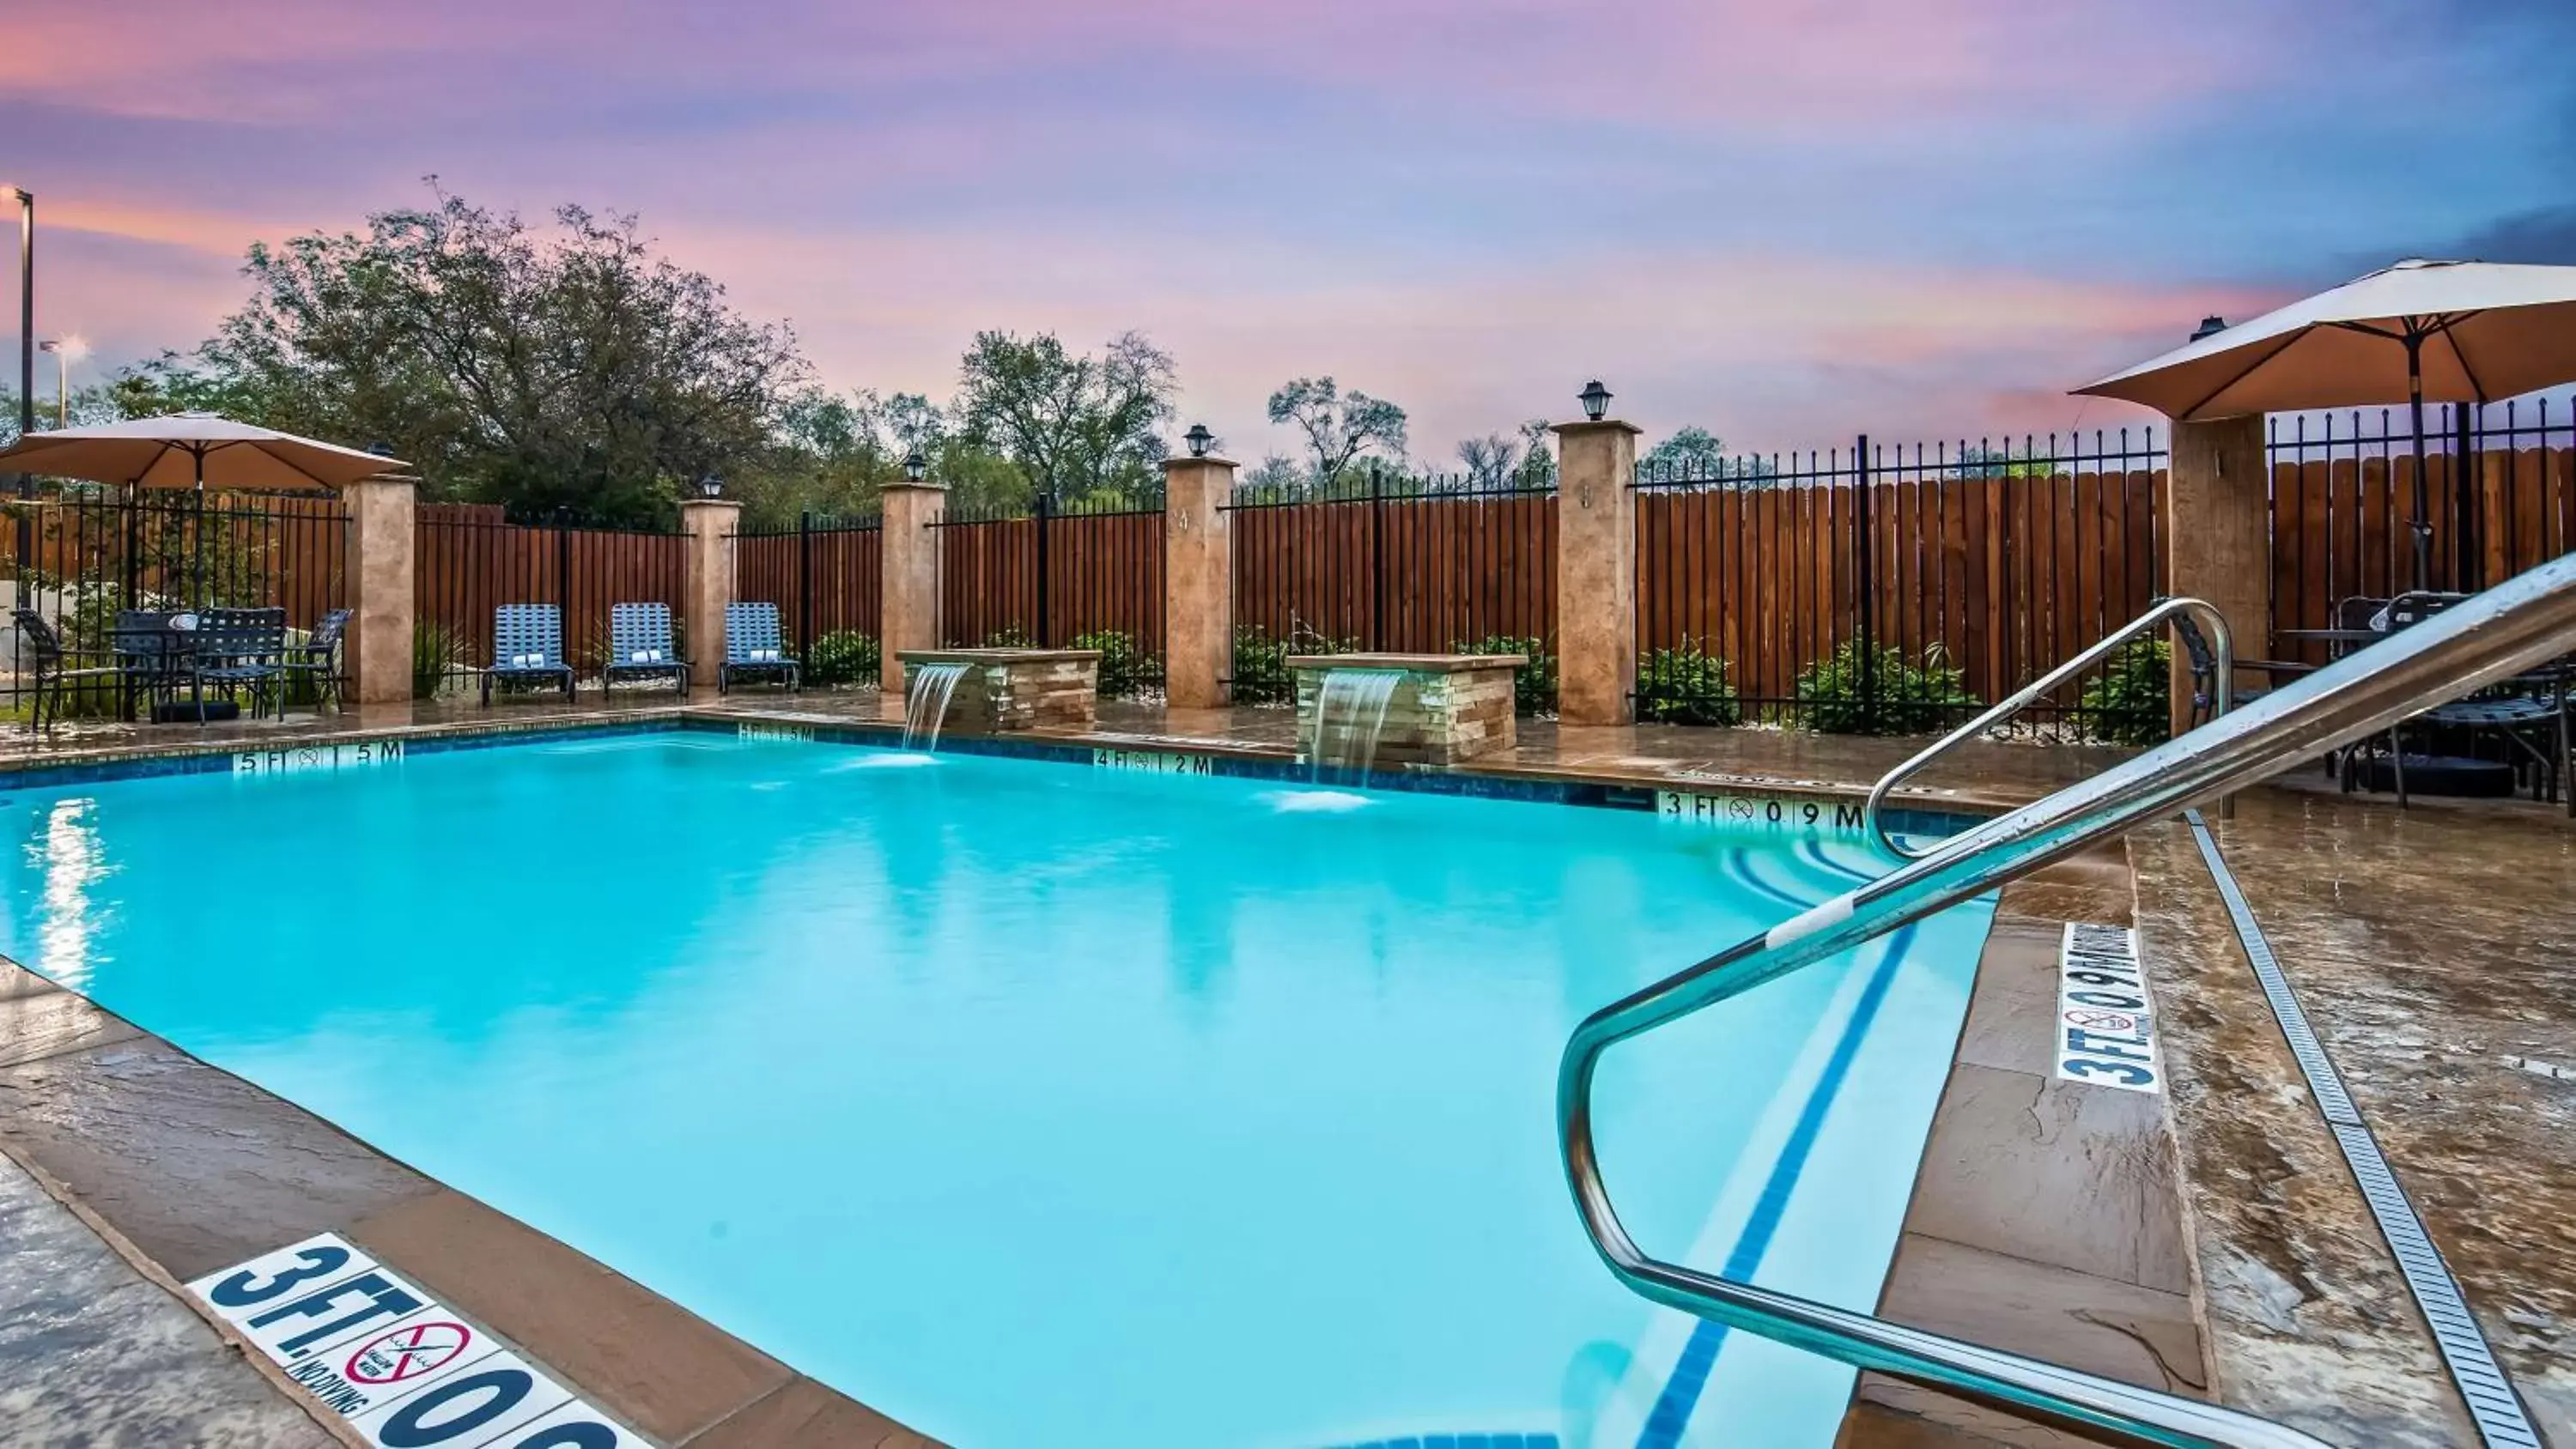 On site, Swimming Pool in Best Western Plus Lampasas Inn & Suites